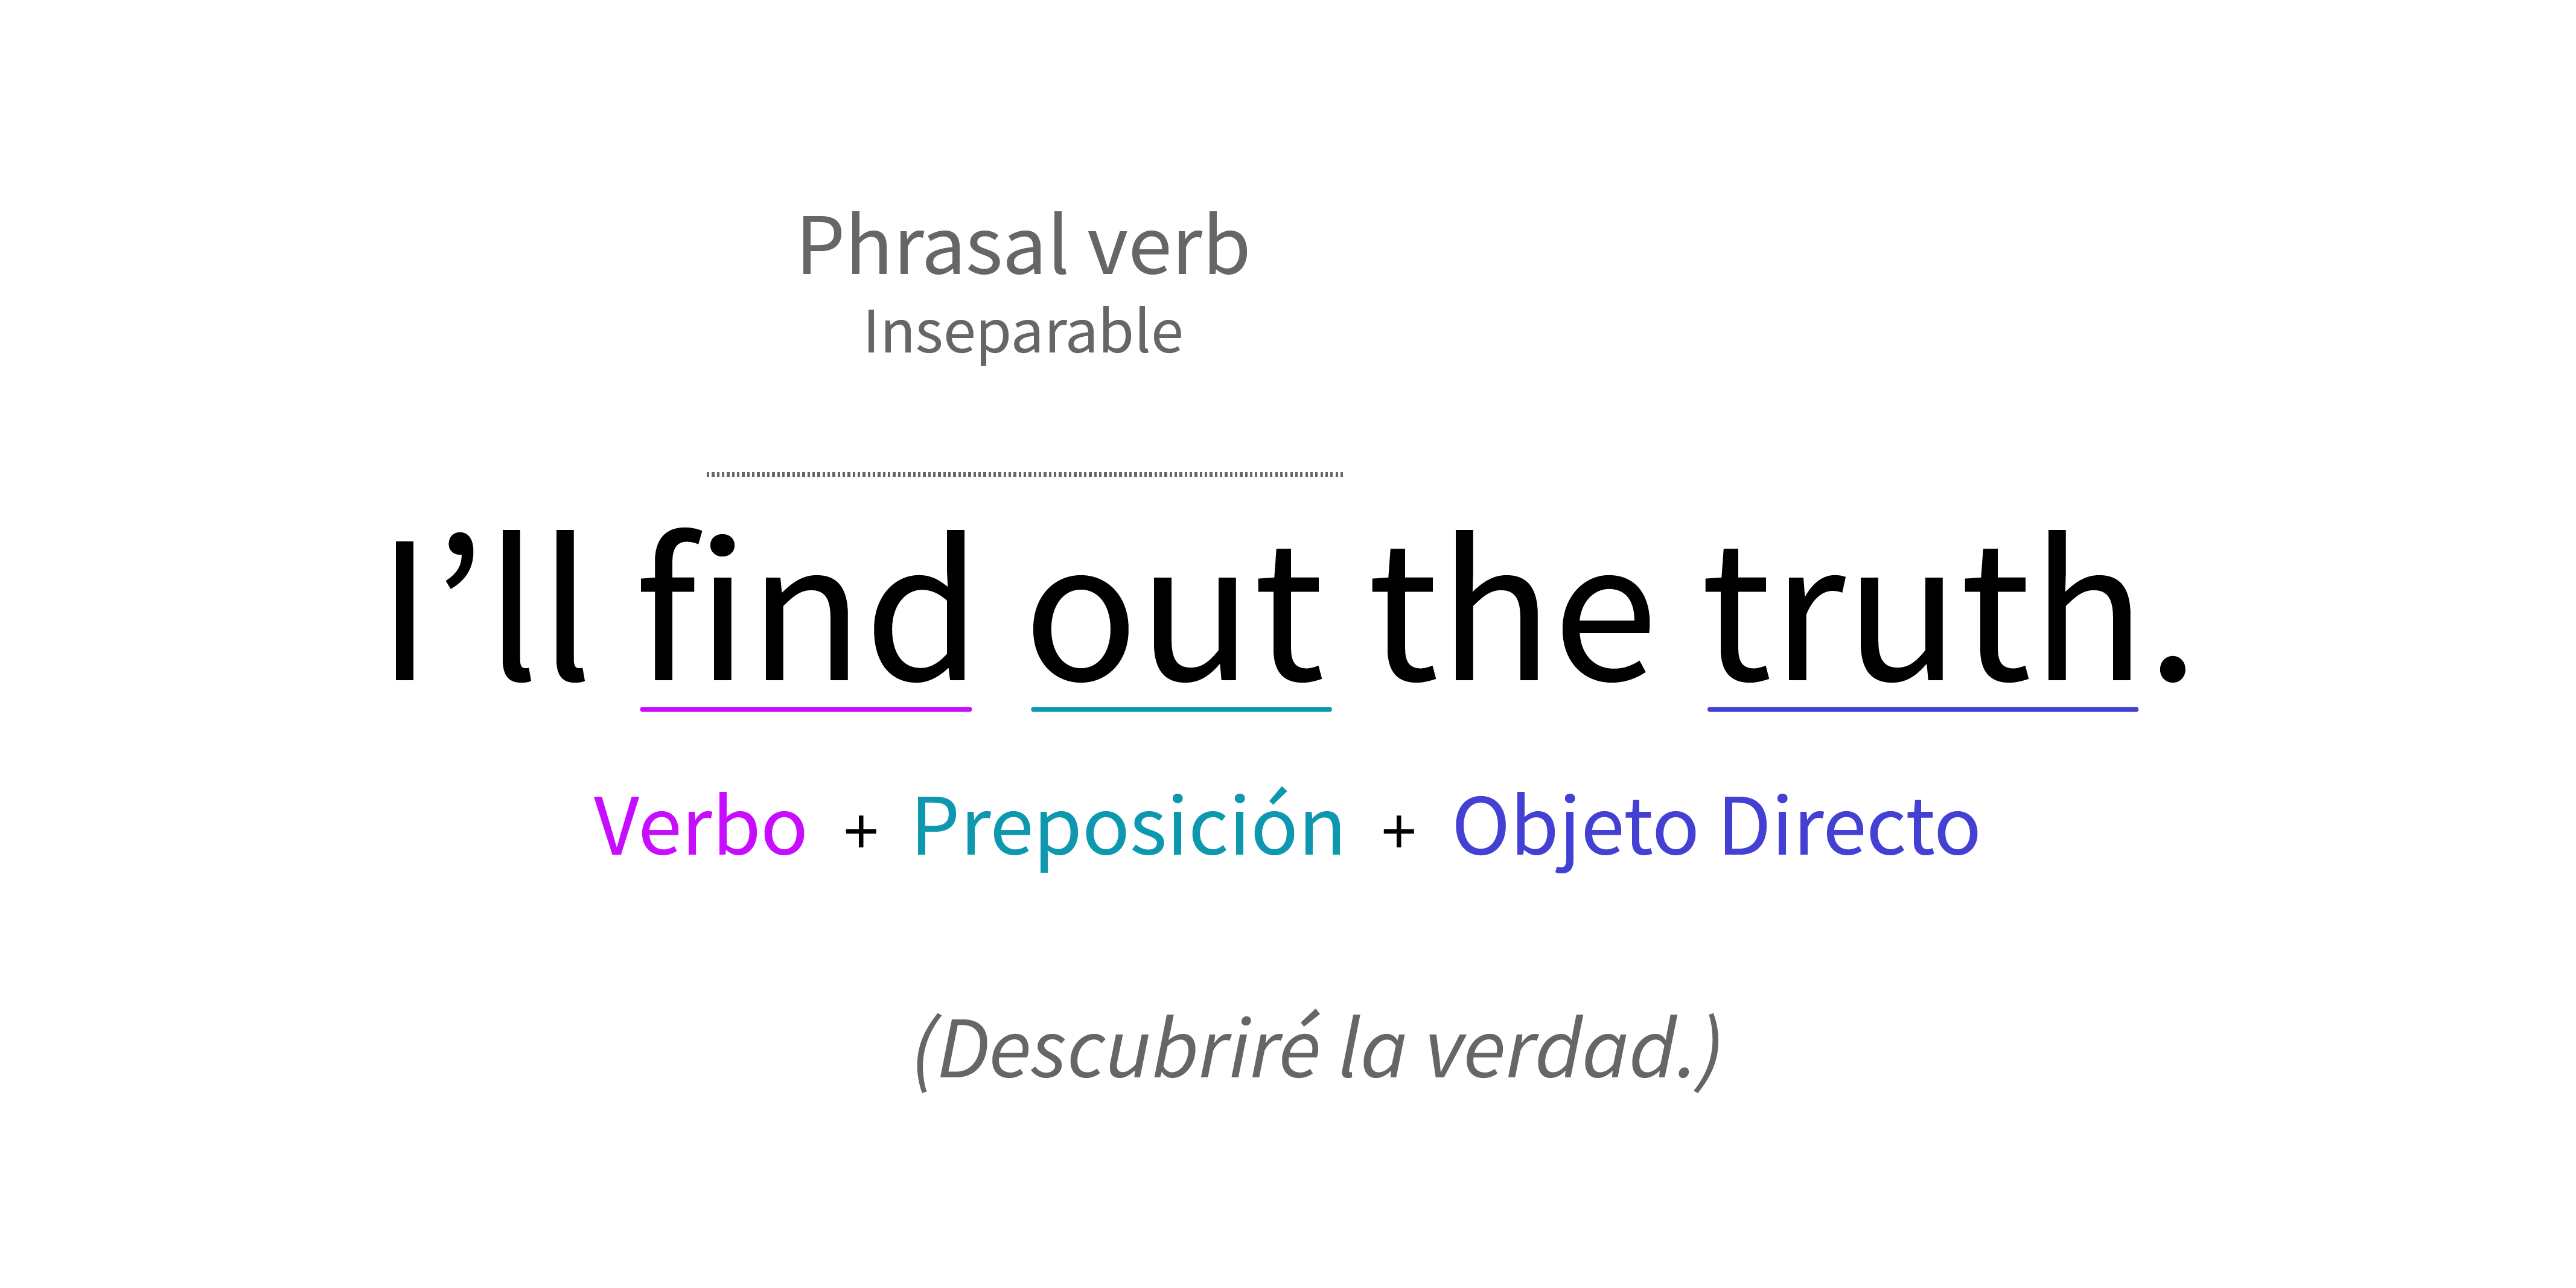 Estructura de oración empleando un phrasal verb inseparable.